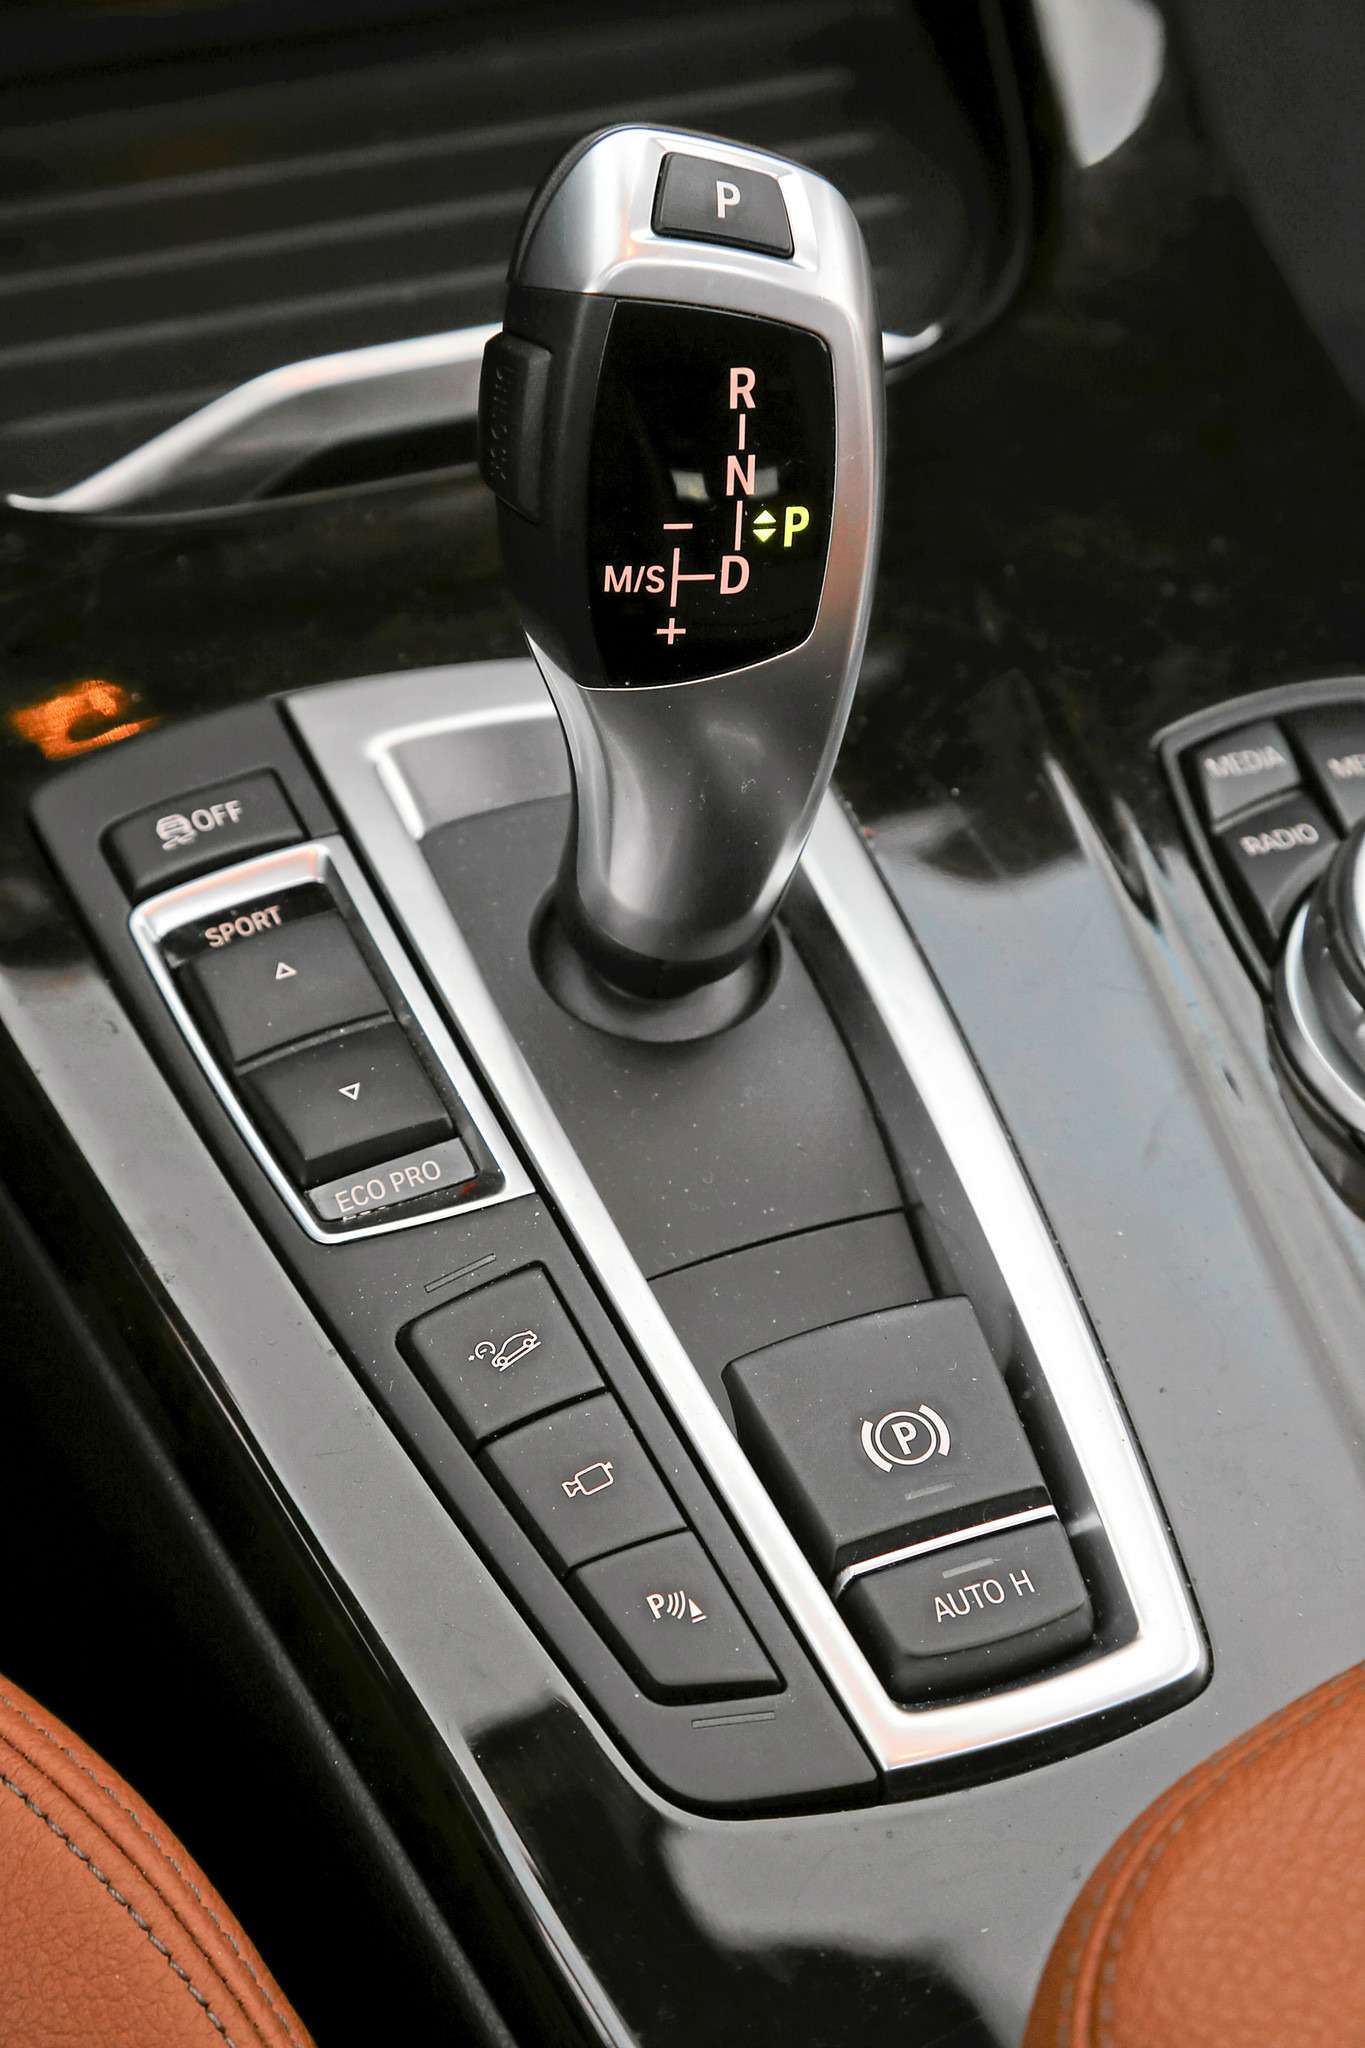 BMW X3 xDrive 20i. Рычаг автомата Х3 лишен механической связи – команды коробке идут по проводам.Под рукой клавиши выбора режимов работы двигателя, коробки передач и усилия на руле. Жаль, нет индивидуальных настроек, как у Мерседеса.